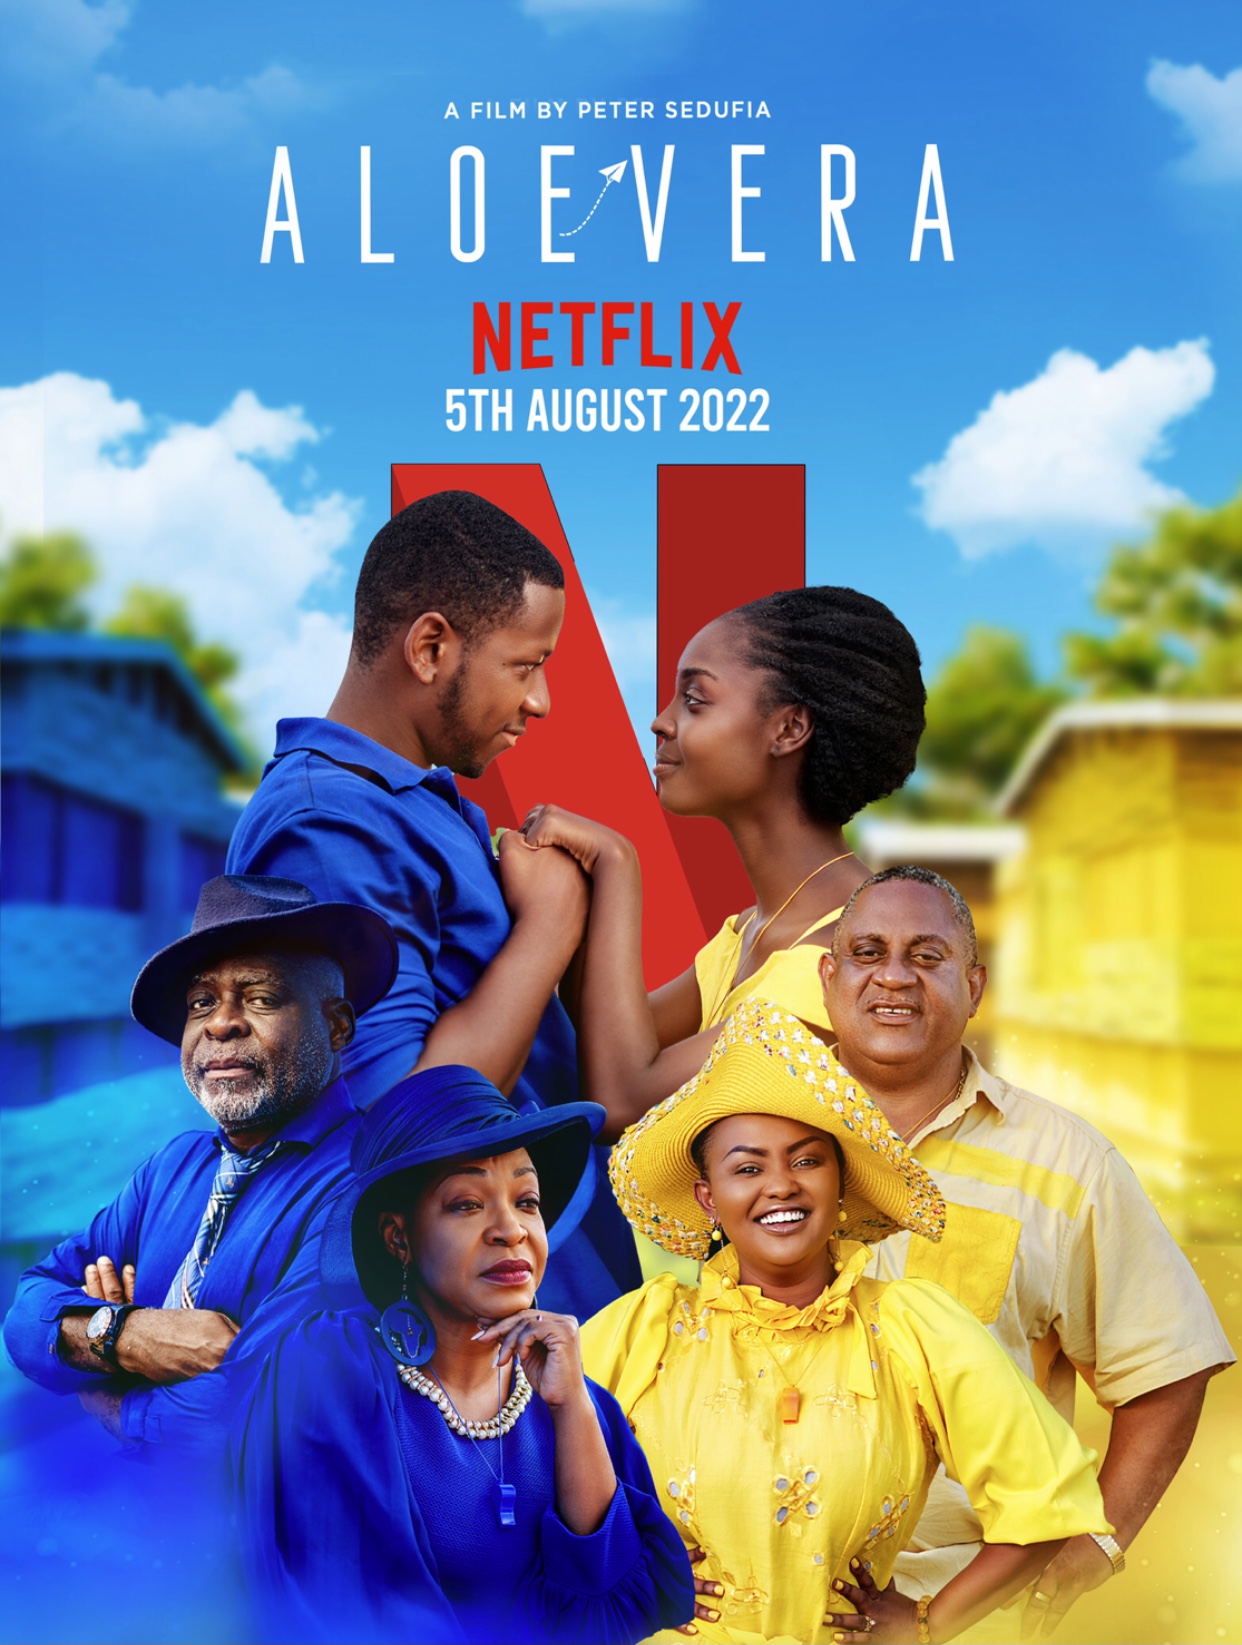 Aloe Vera: Peter Sedufia’s film premieres on Netflix on August 5